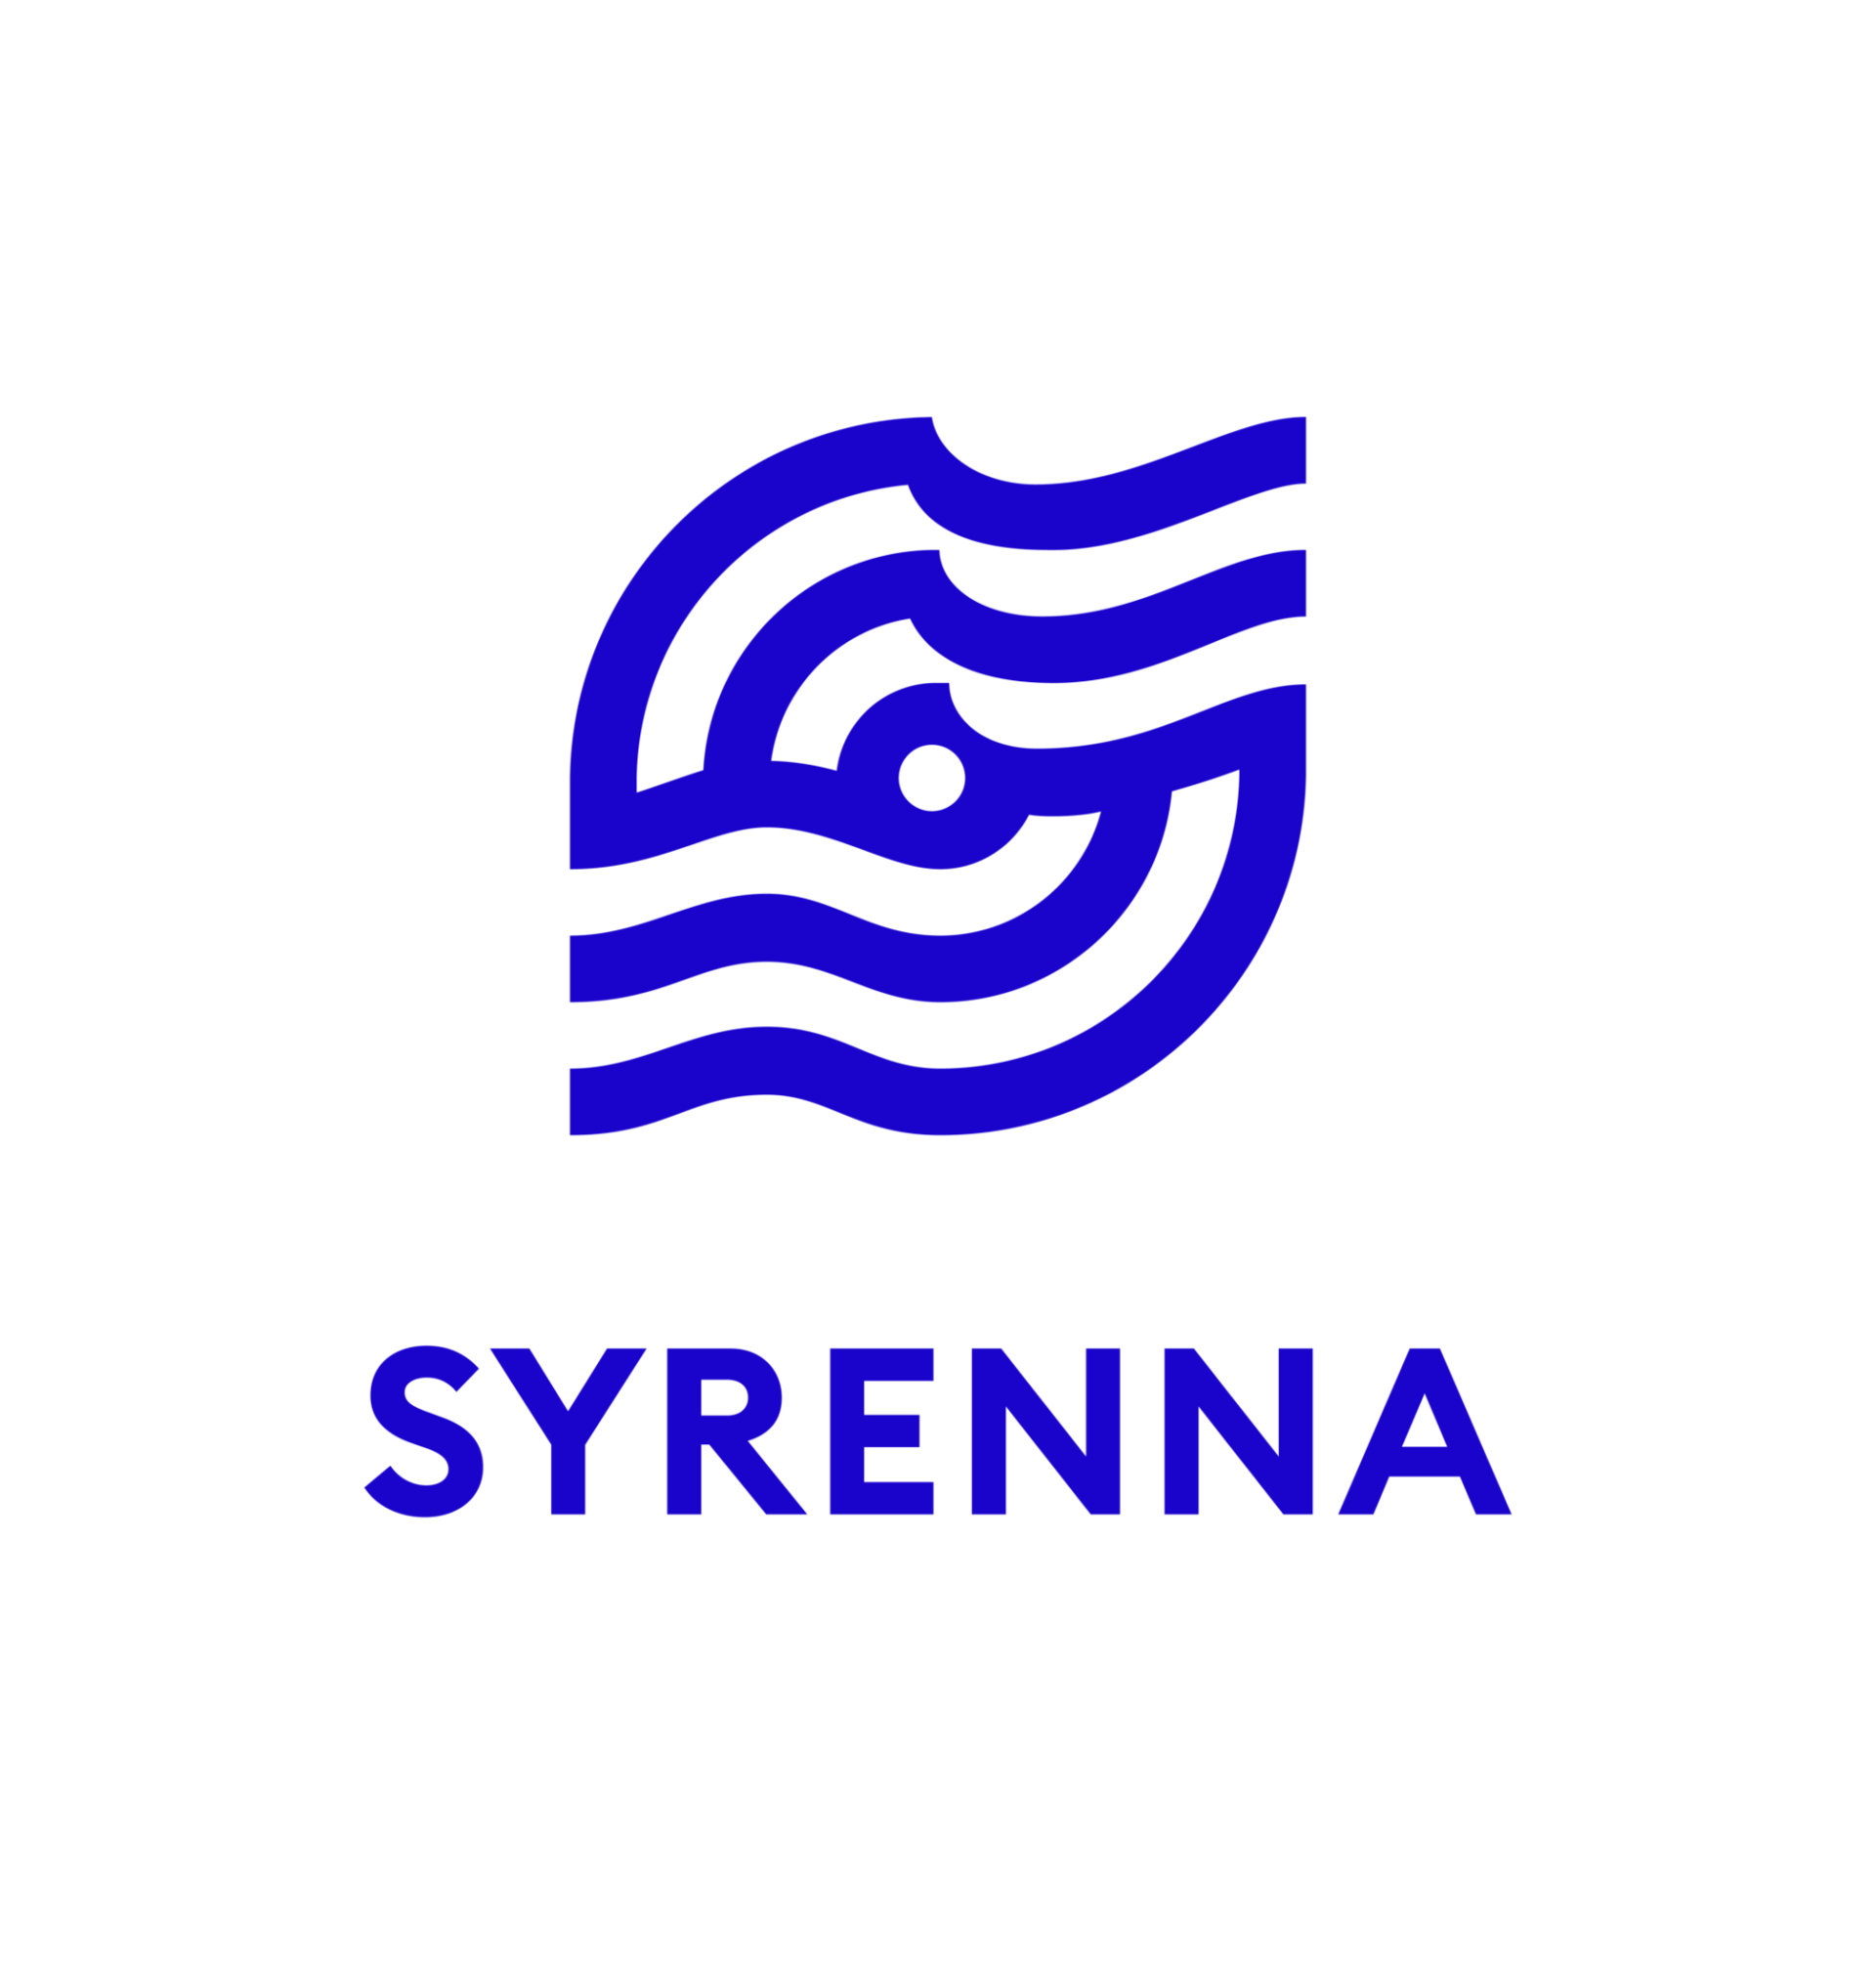 Syrenna